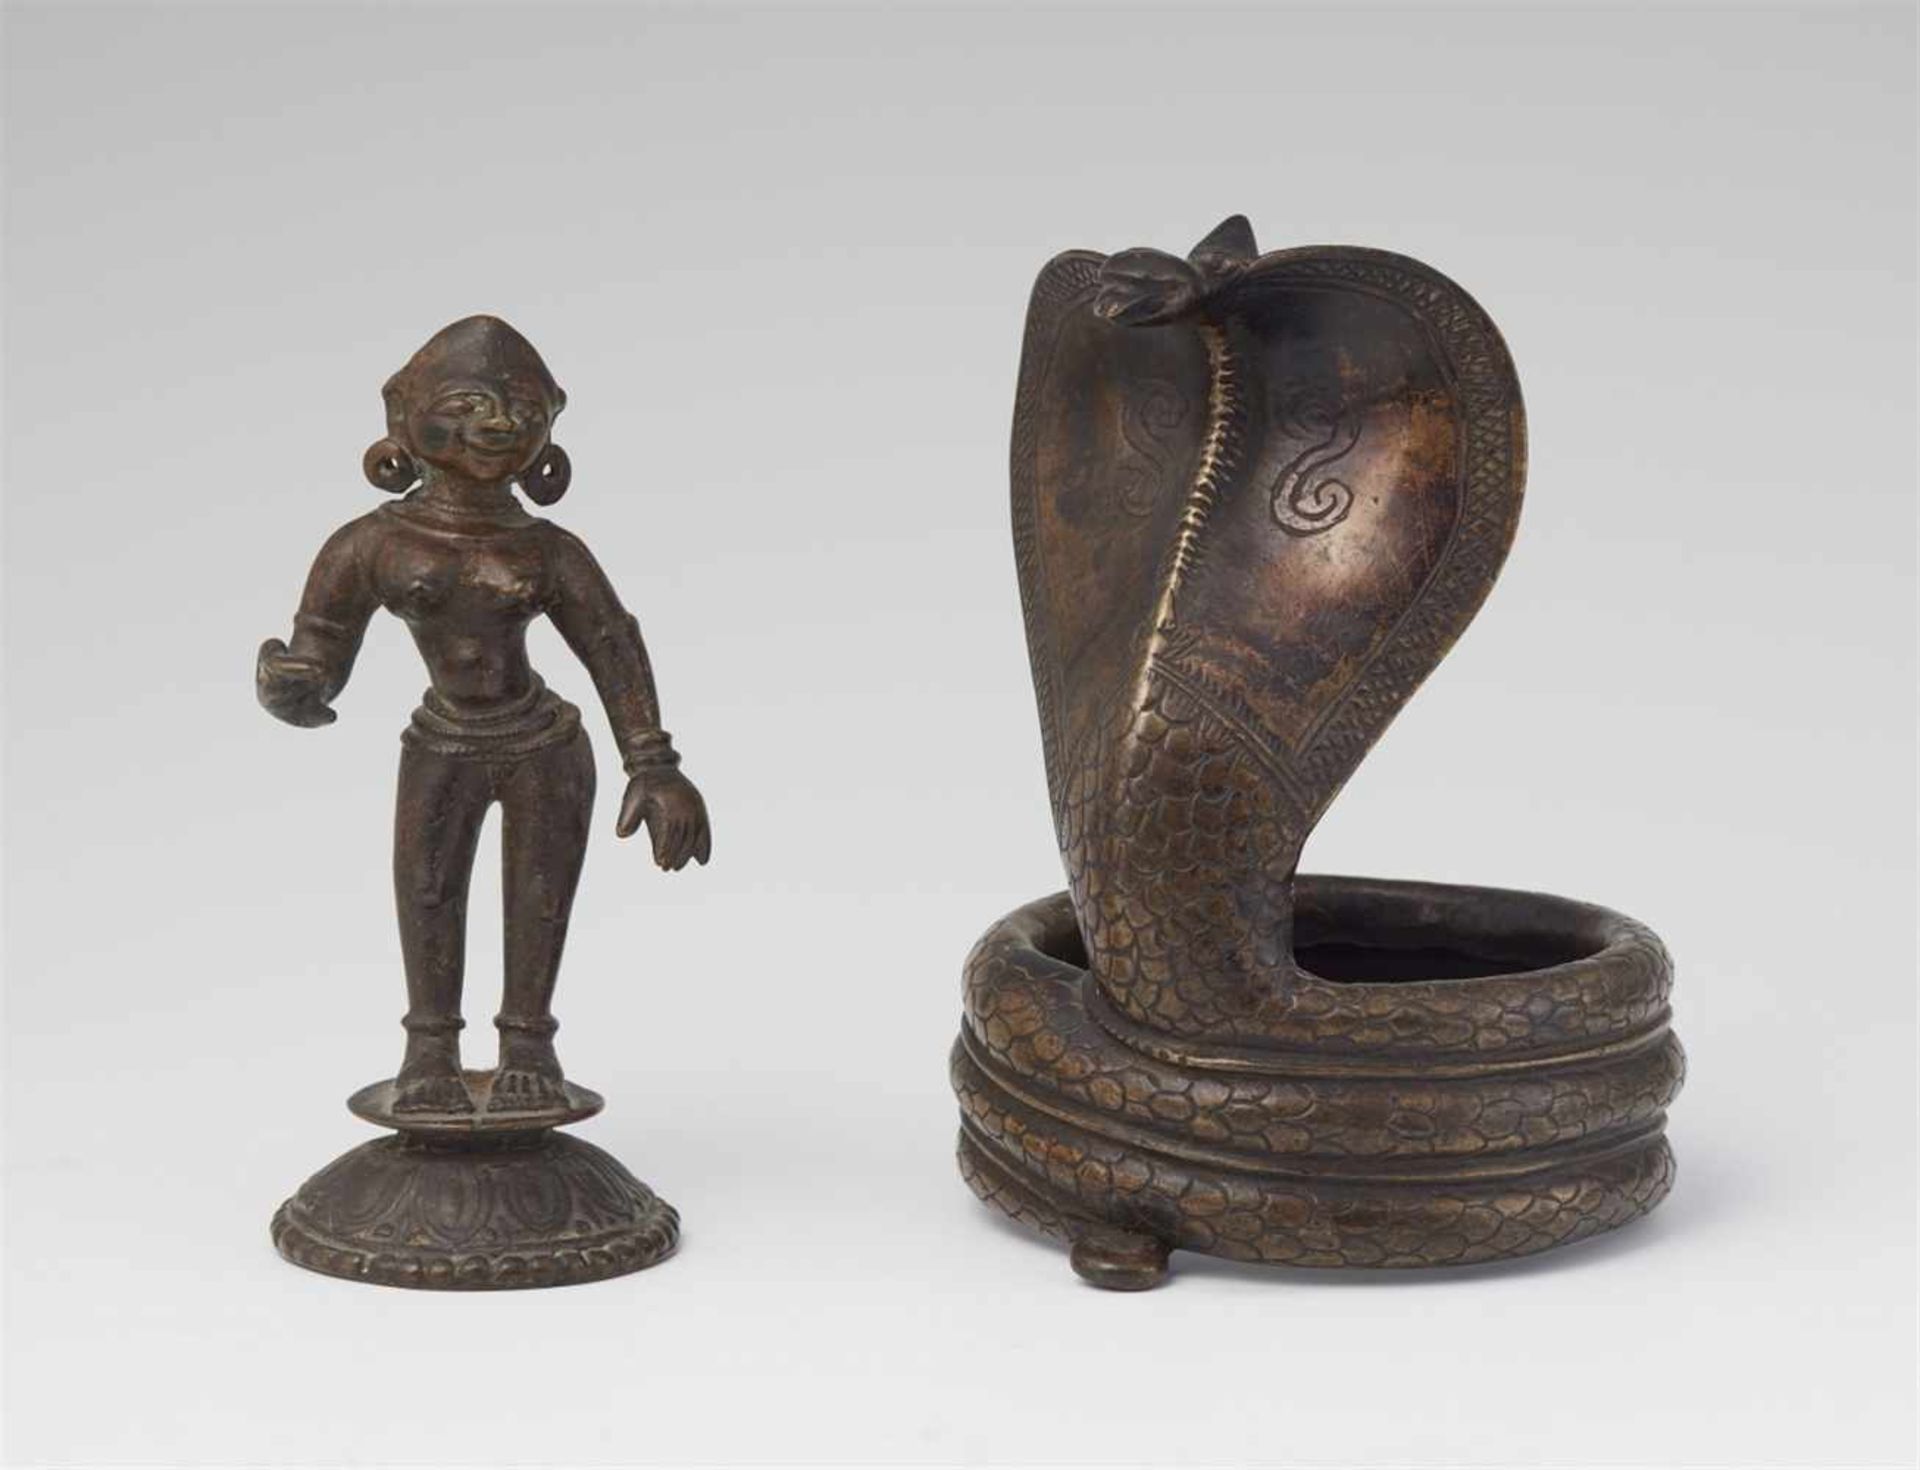 Zwei Figuren. Bronze. Wohl 19. Jh.a) Weibliche Figur, wahrscheinlich Radha, bis auf Ketten